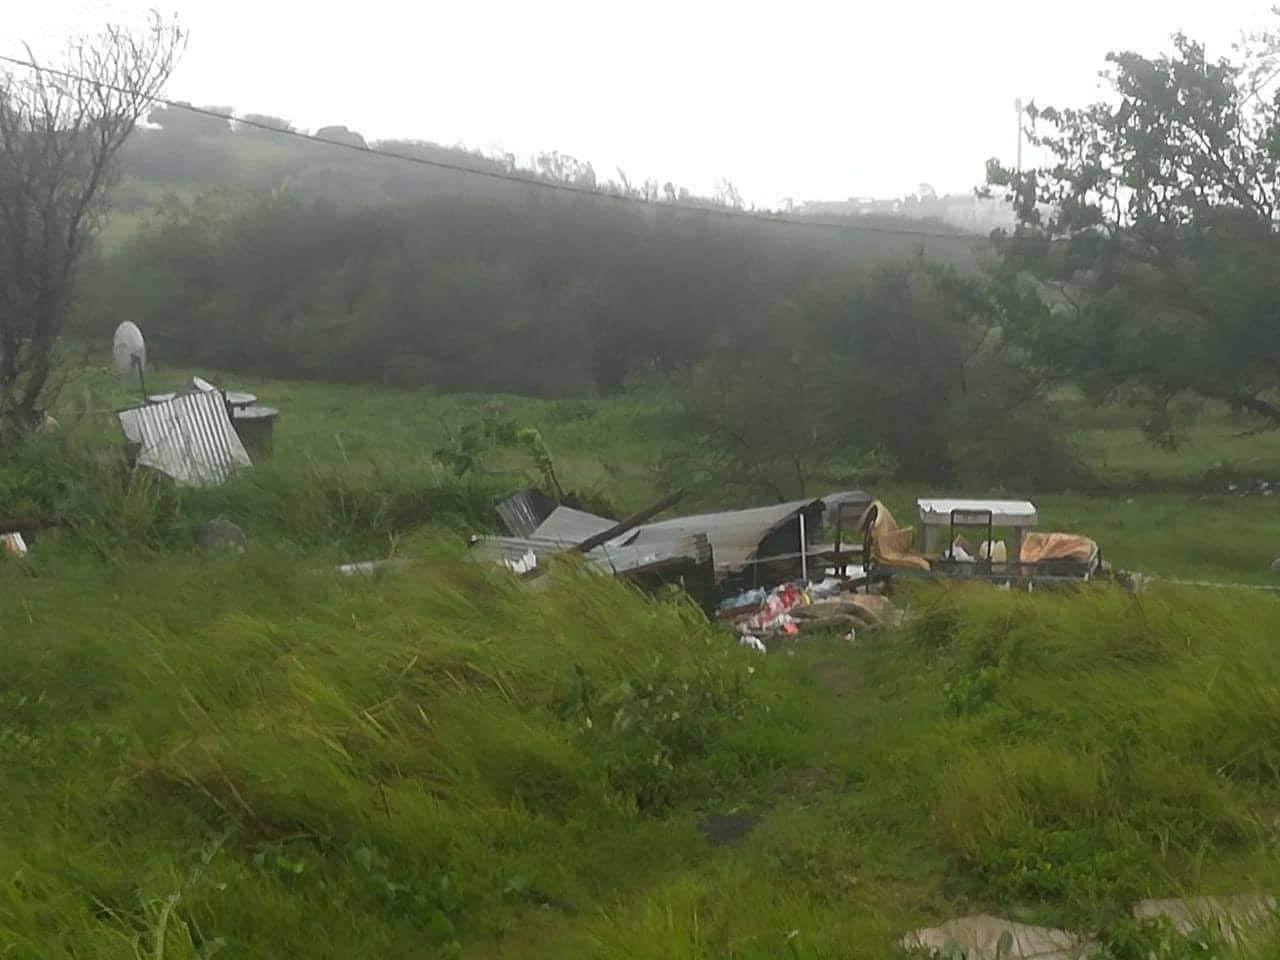 15h: Cyclone intense Joaninha à Rodrigues: photos de cet après midi à Rodrigues